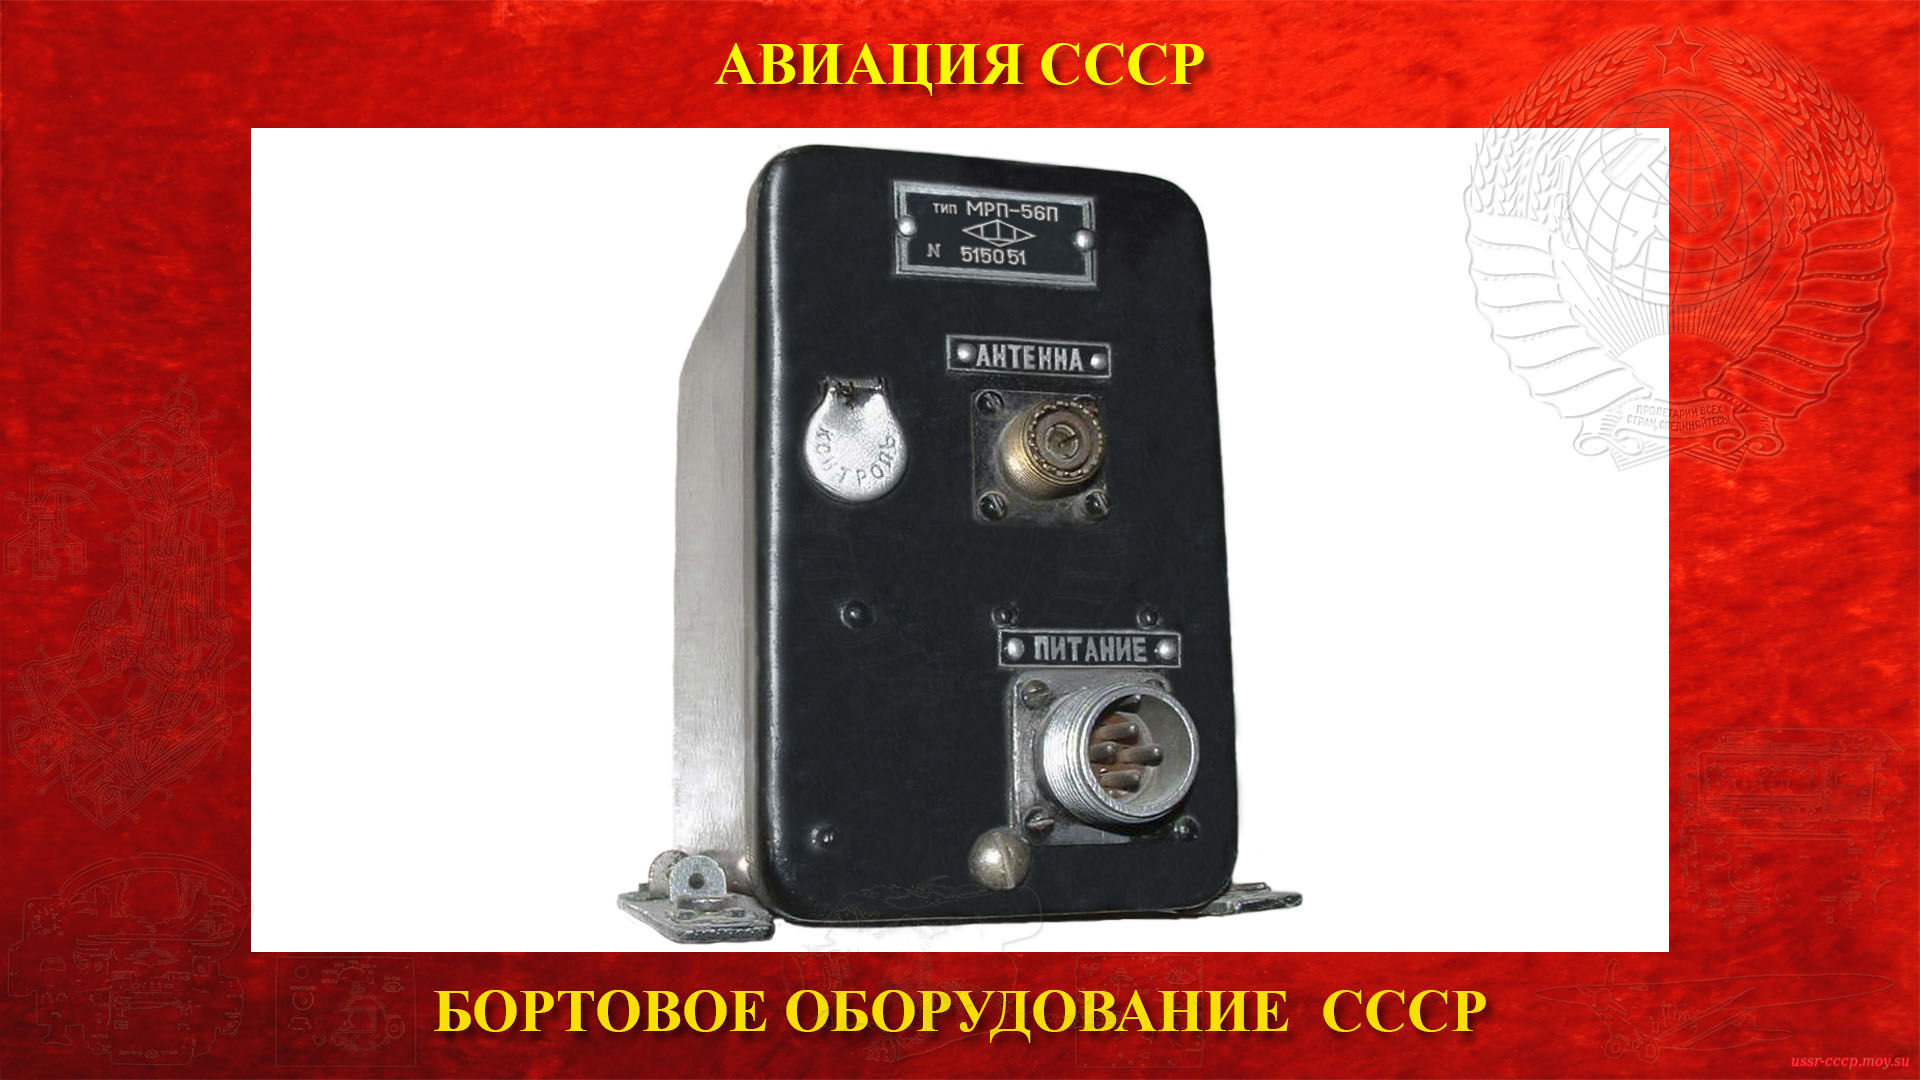 МРП-56П — Маркерный радиоприёмник (повествование)